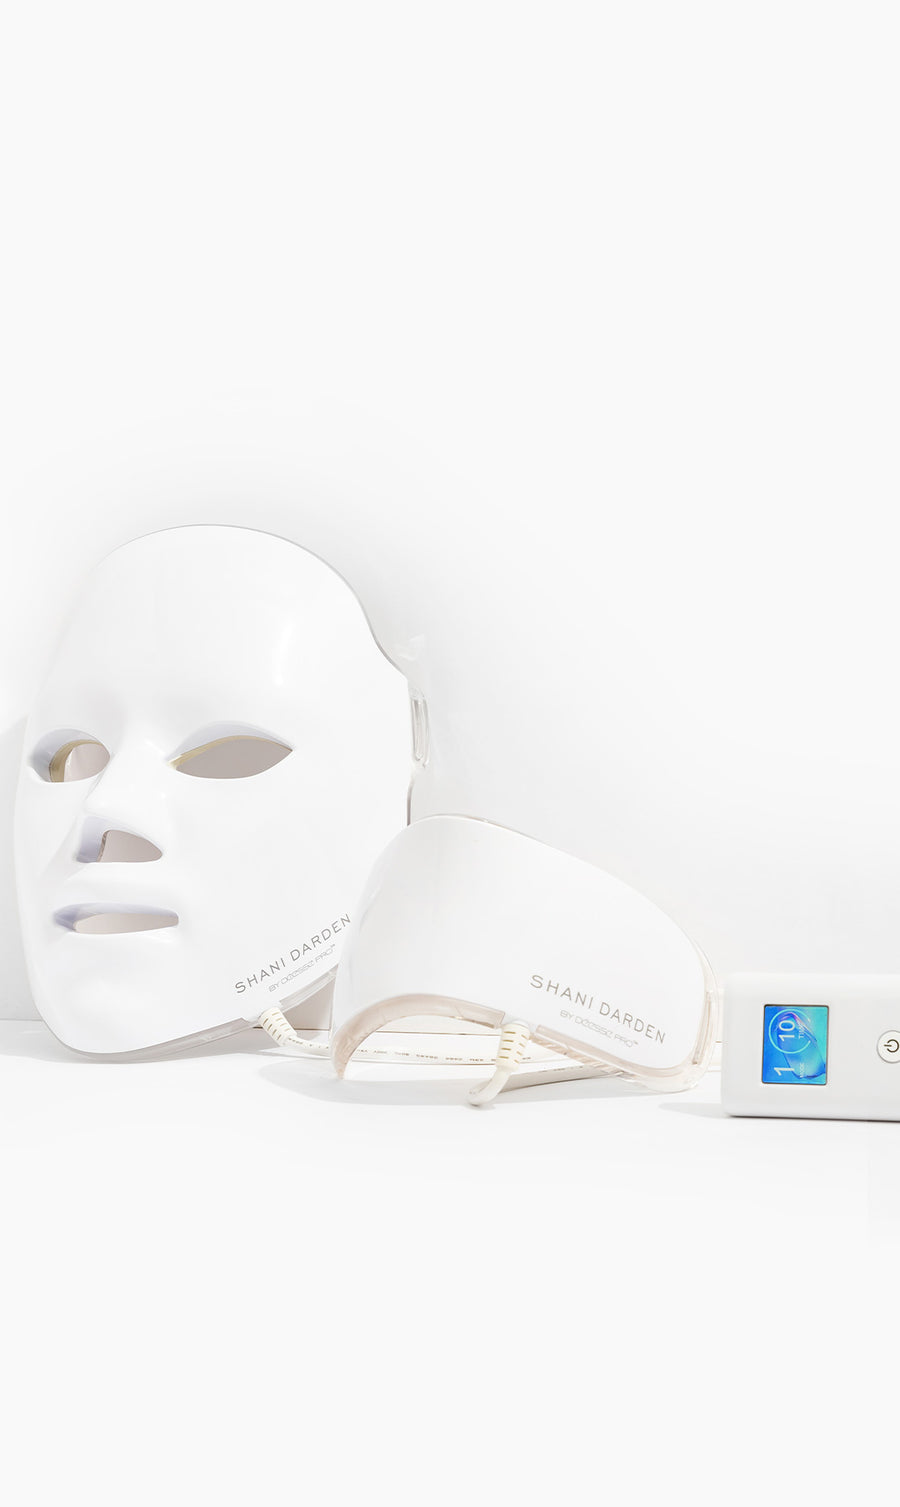 Déesse PRO LED Mask: Light Therapy